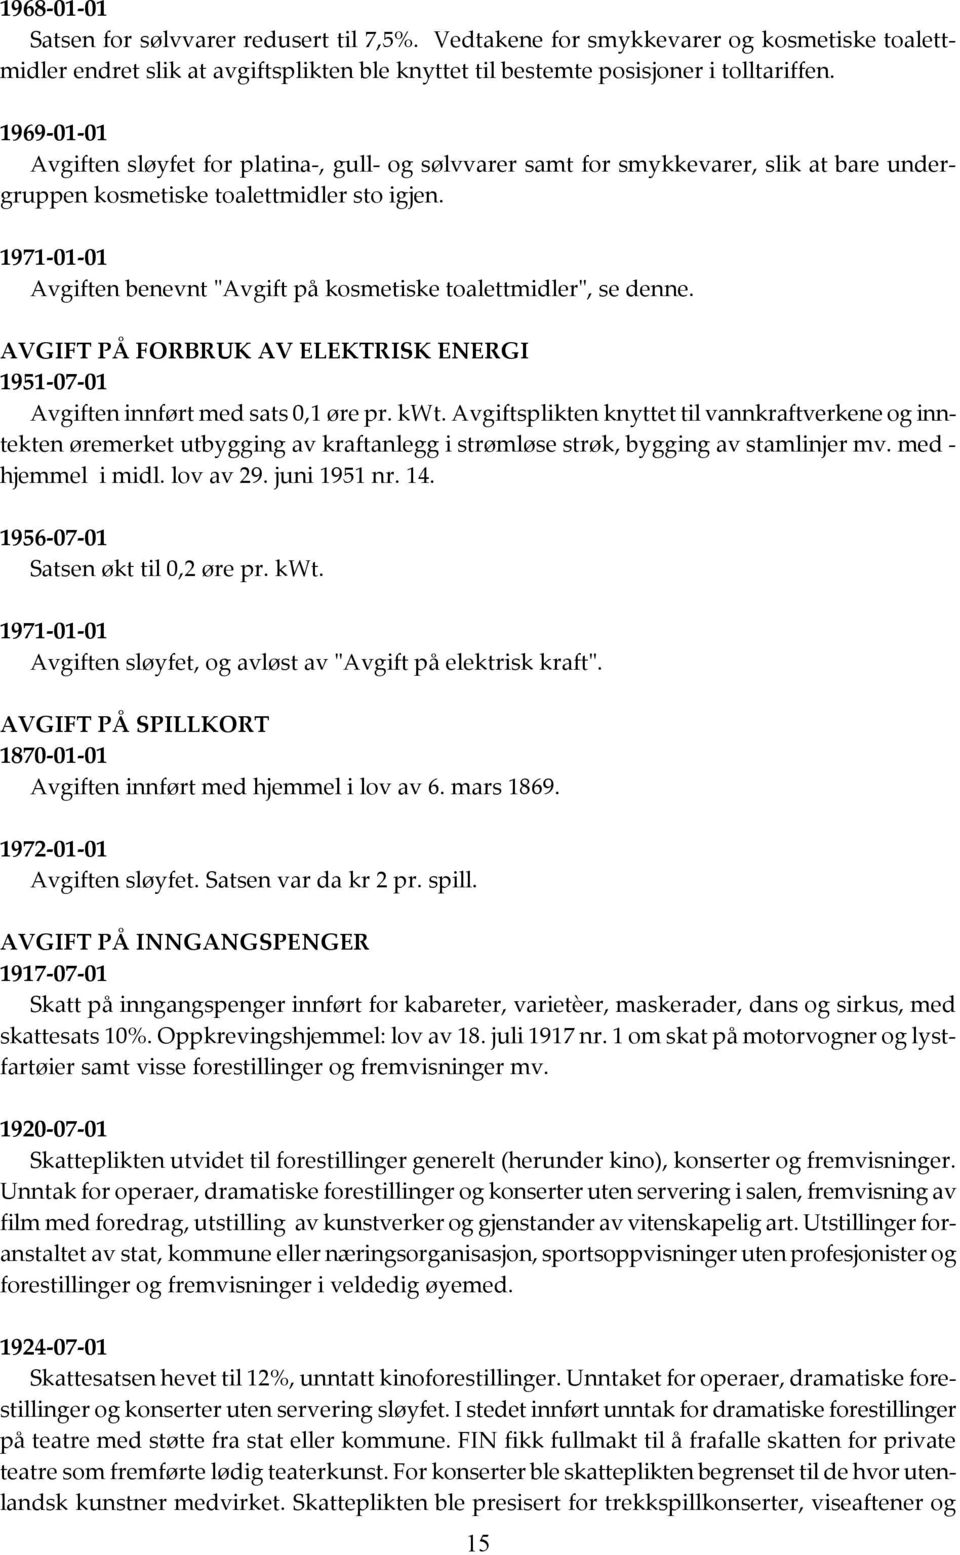 1971-01-01 Avgiften benevnt "Avgift på kosmetiske toalettmidler", se denne. AVGIFT PÅ FORBRUK AV ELEKTRISK ENERGI 1951-07-01 Avgiften innført med sats 0,1 øre pr. kwt.